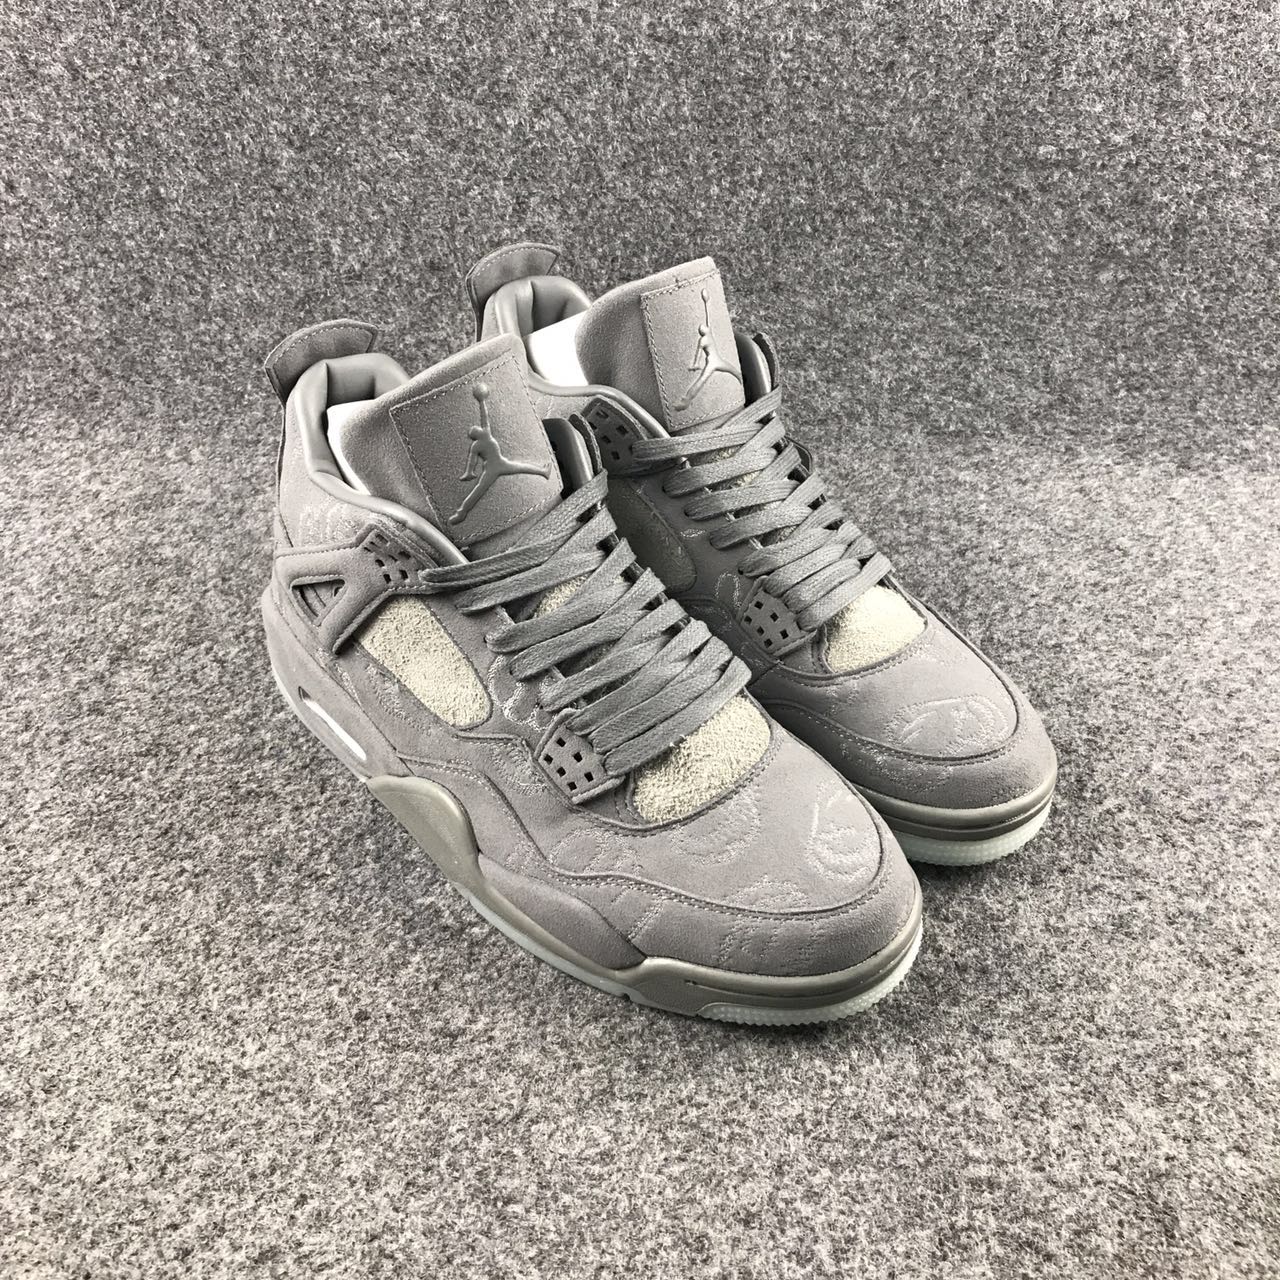 Original Air Jordan 6 KWAs Grey Sample Shoes